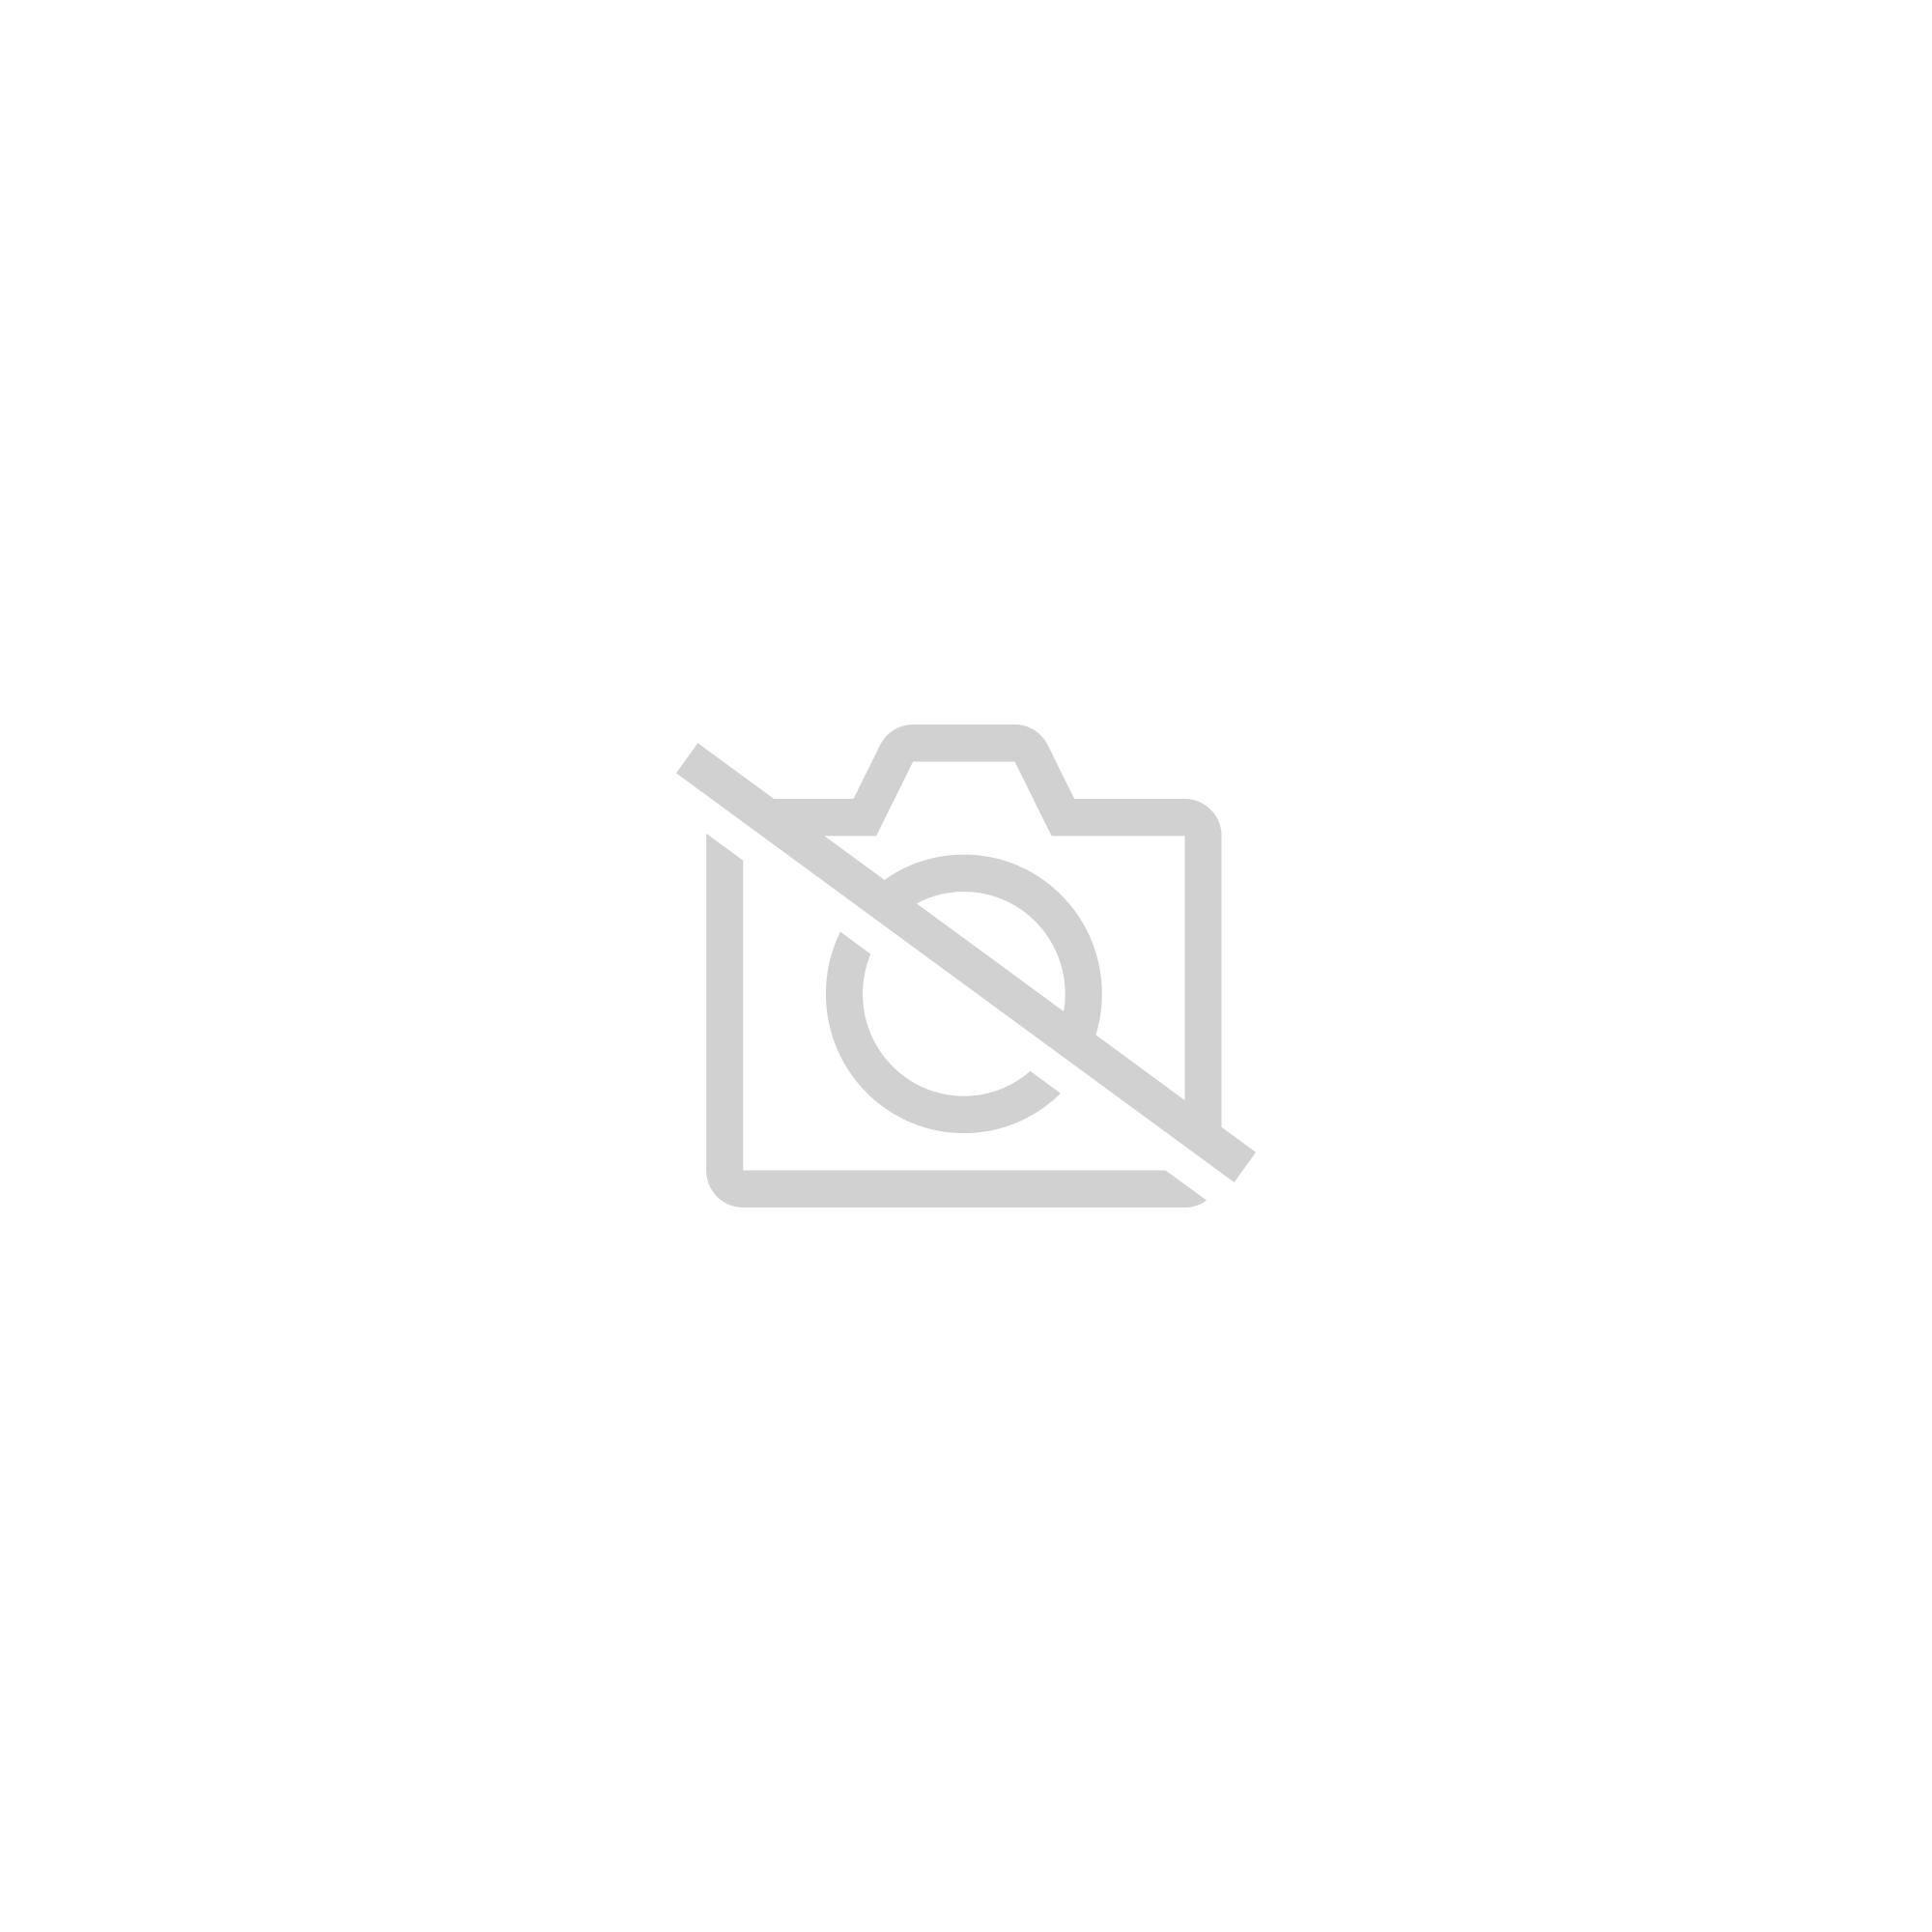 Tapis de souris Fairy Tail 3d, accessoire ergonomique pour ordinateur de bureau gamer, 700x300x3mm, parfait comme cadeau d'halloween - mousepad 16|Size 800x400x4mm - SBD0328B07198